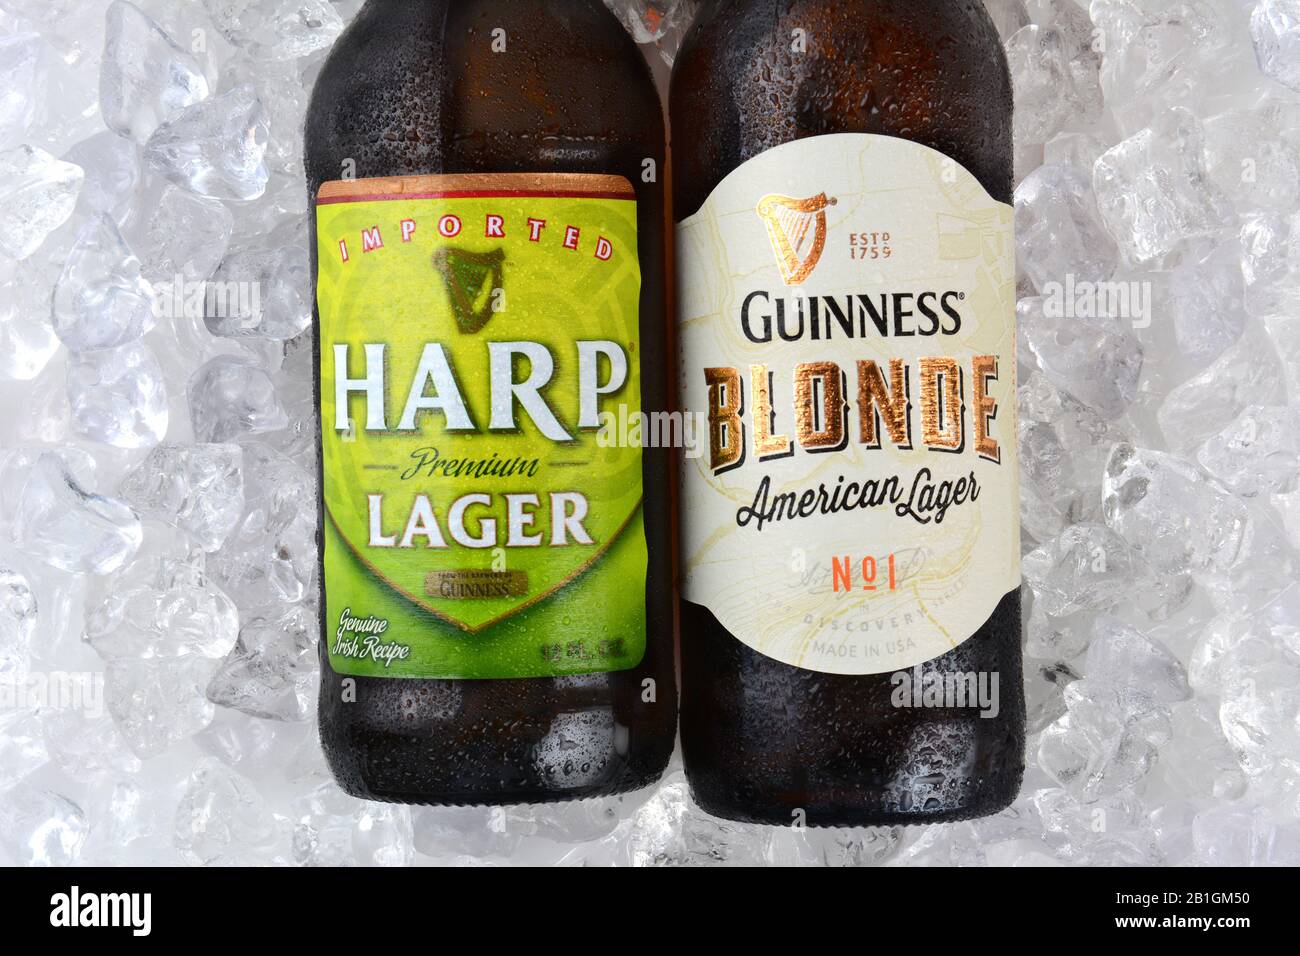 Irvine, CA - 11 GENNAIO 2015: Una bottiglia di arpa Lager e closeup Blonde Guinness su un letto di ghiaccio. Entrambi i lager sono realizzati dalla Guinness Brewing Comran Foto Stock